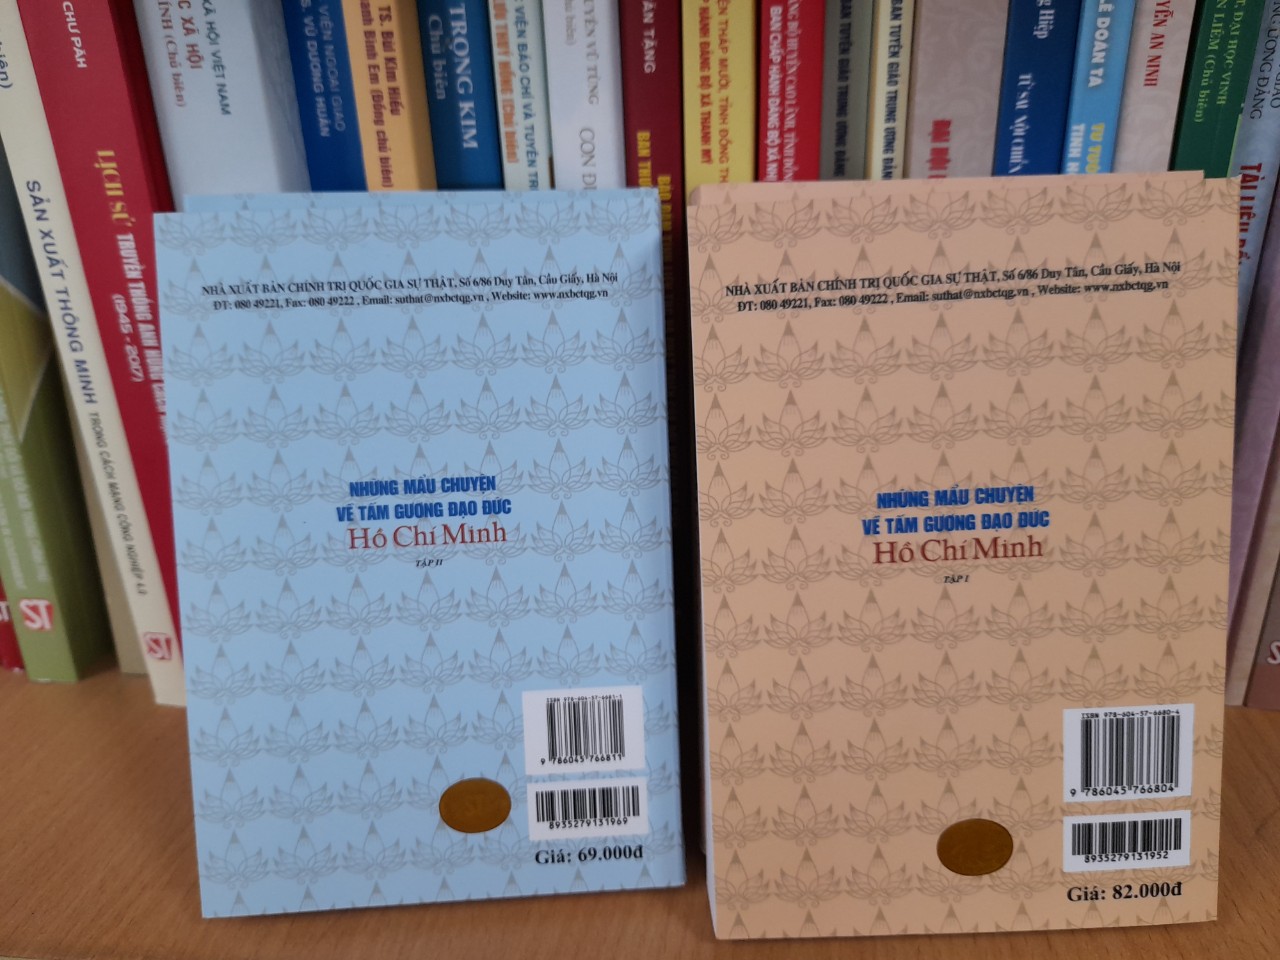 Những Mẩu Chuyện Về Tấm Gương Đạo Đức Hồ Chí Minh (gồm 2 tập)